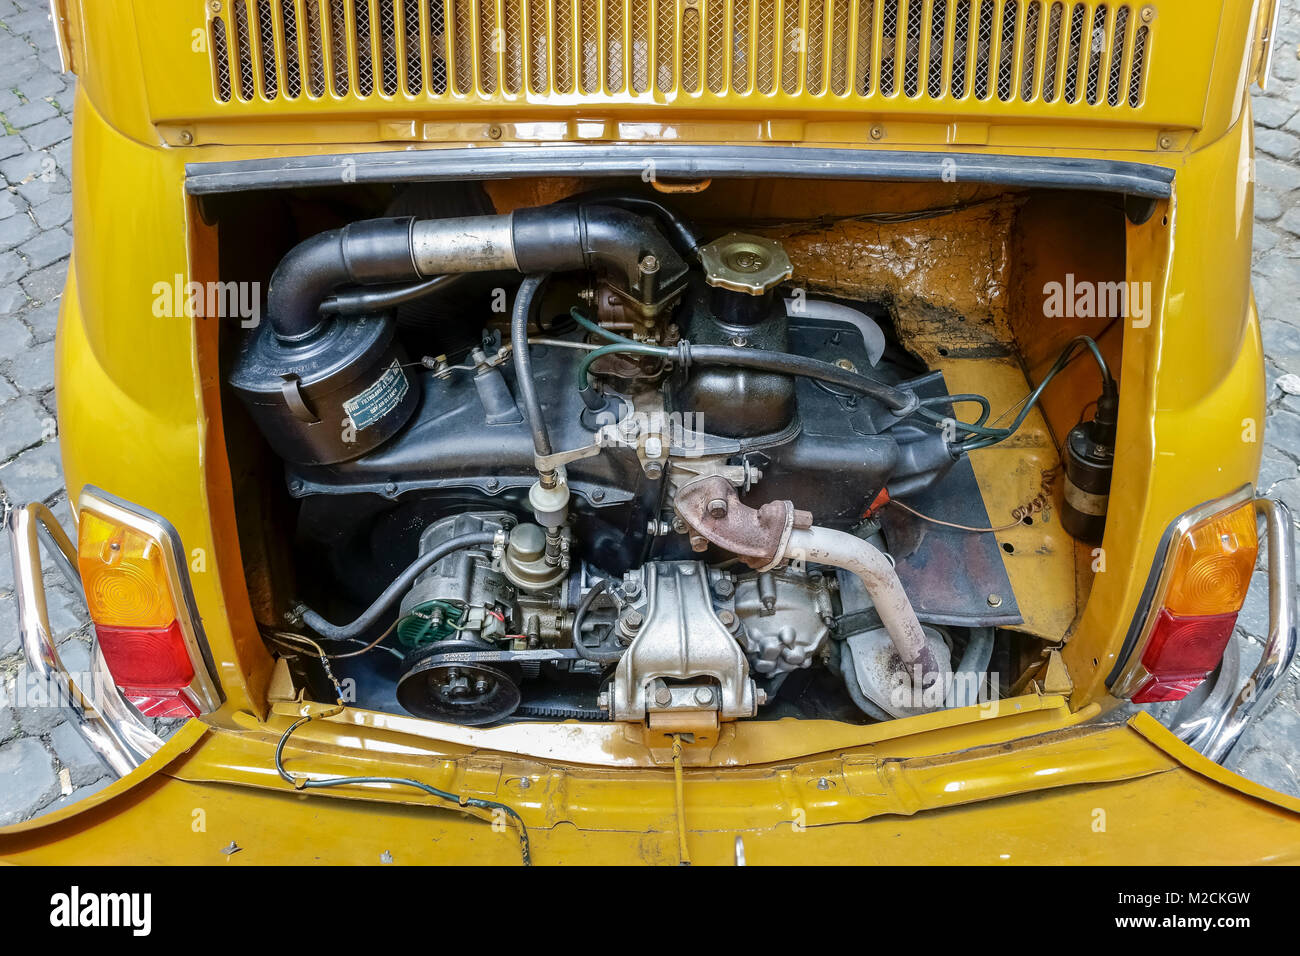 Auto Motorhaube öffnen. Motor, Getriebe, Fiat 500 1970 hergestellt. Alter Stil, Klassik, Vintage, retro Auto. Farbe gelb. Nahaufnahme, oben betrachten. Stockfoto